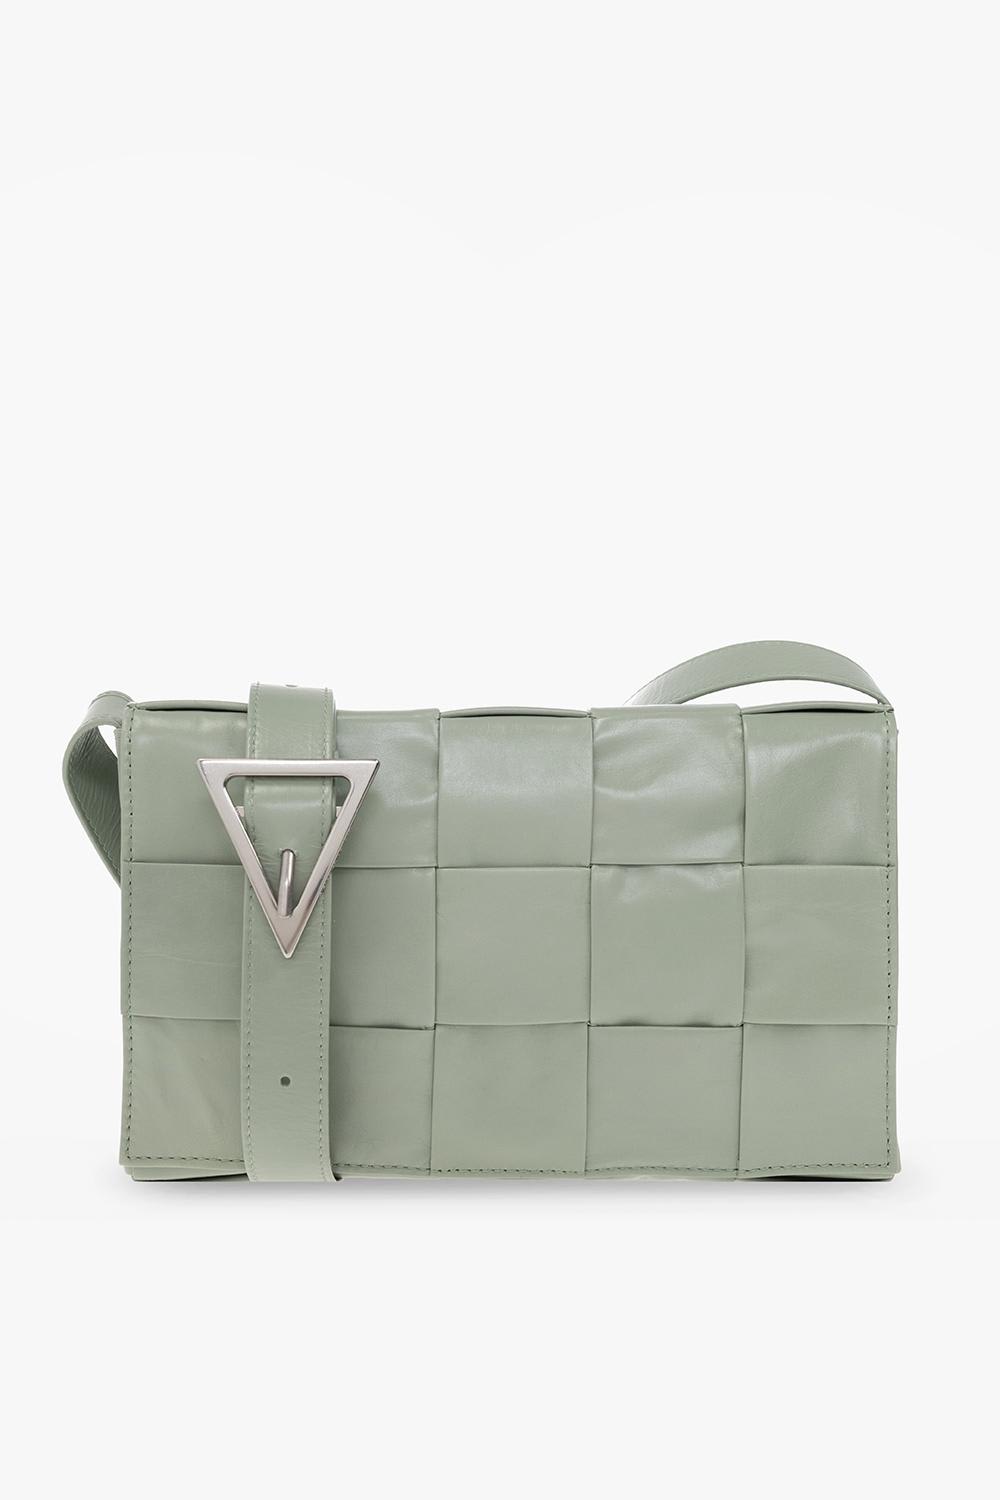 Bottega Veneta Cassette Small Shoulder Bag In Green